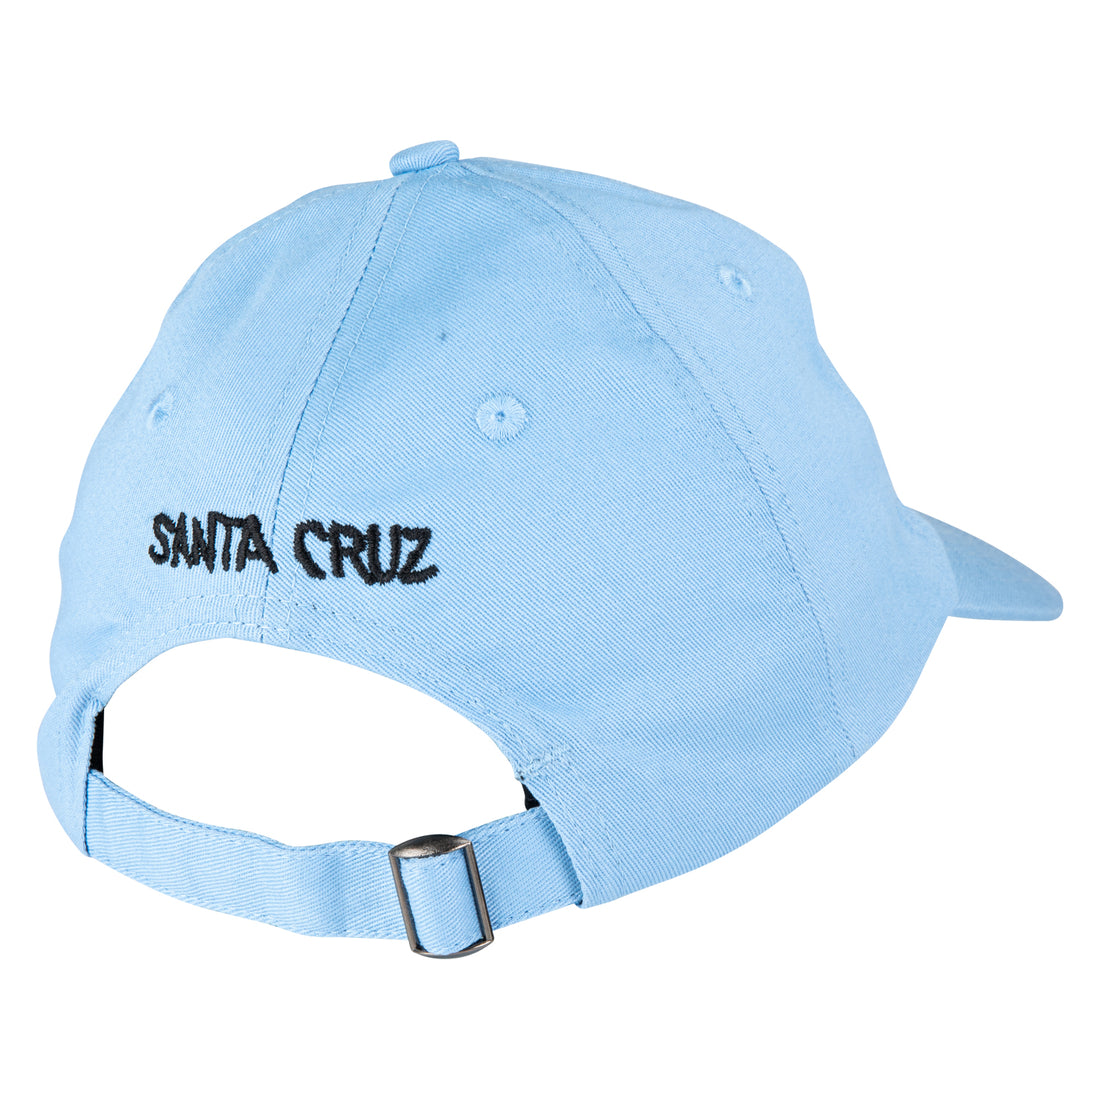 Santa Cruz Youth Screaming Wave Cap